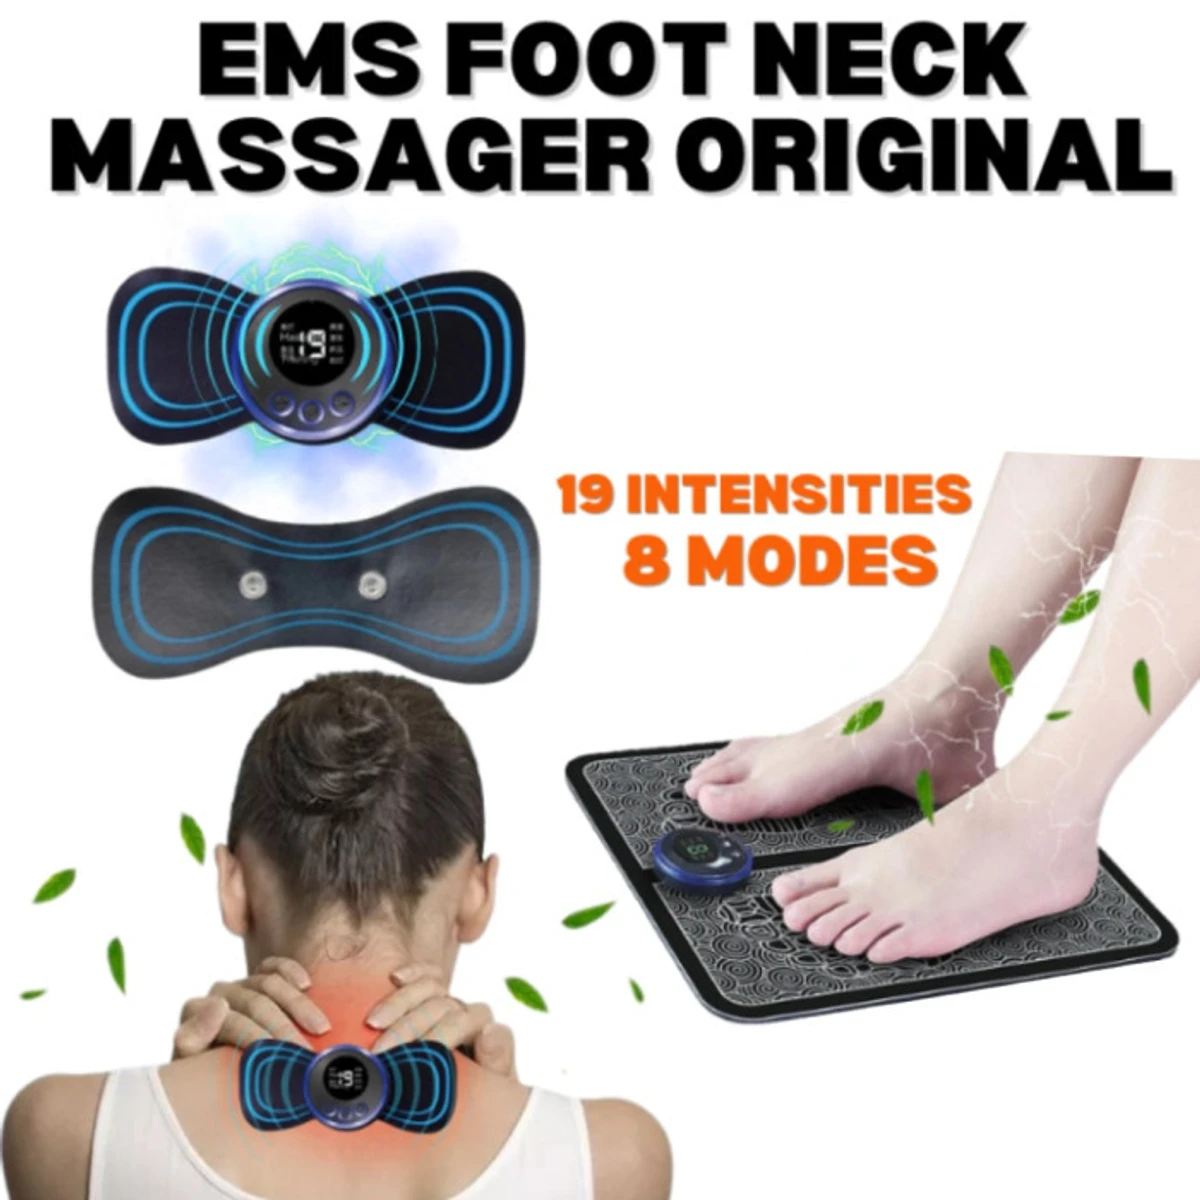 Body Massager +Foot Massager